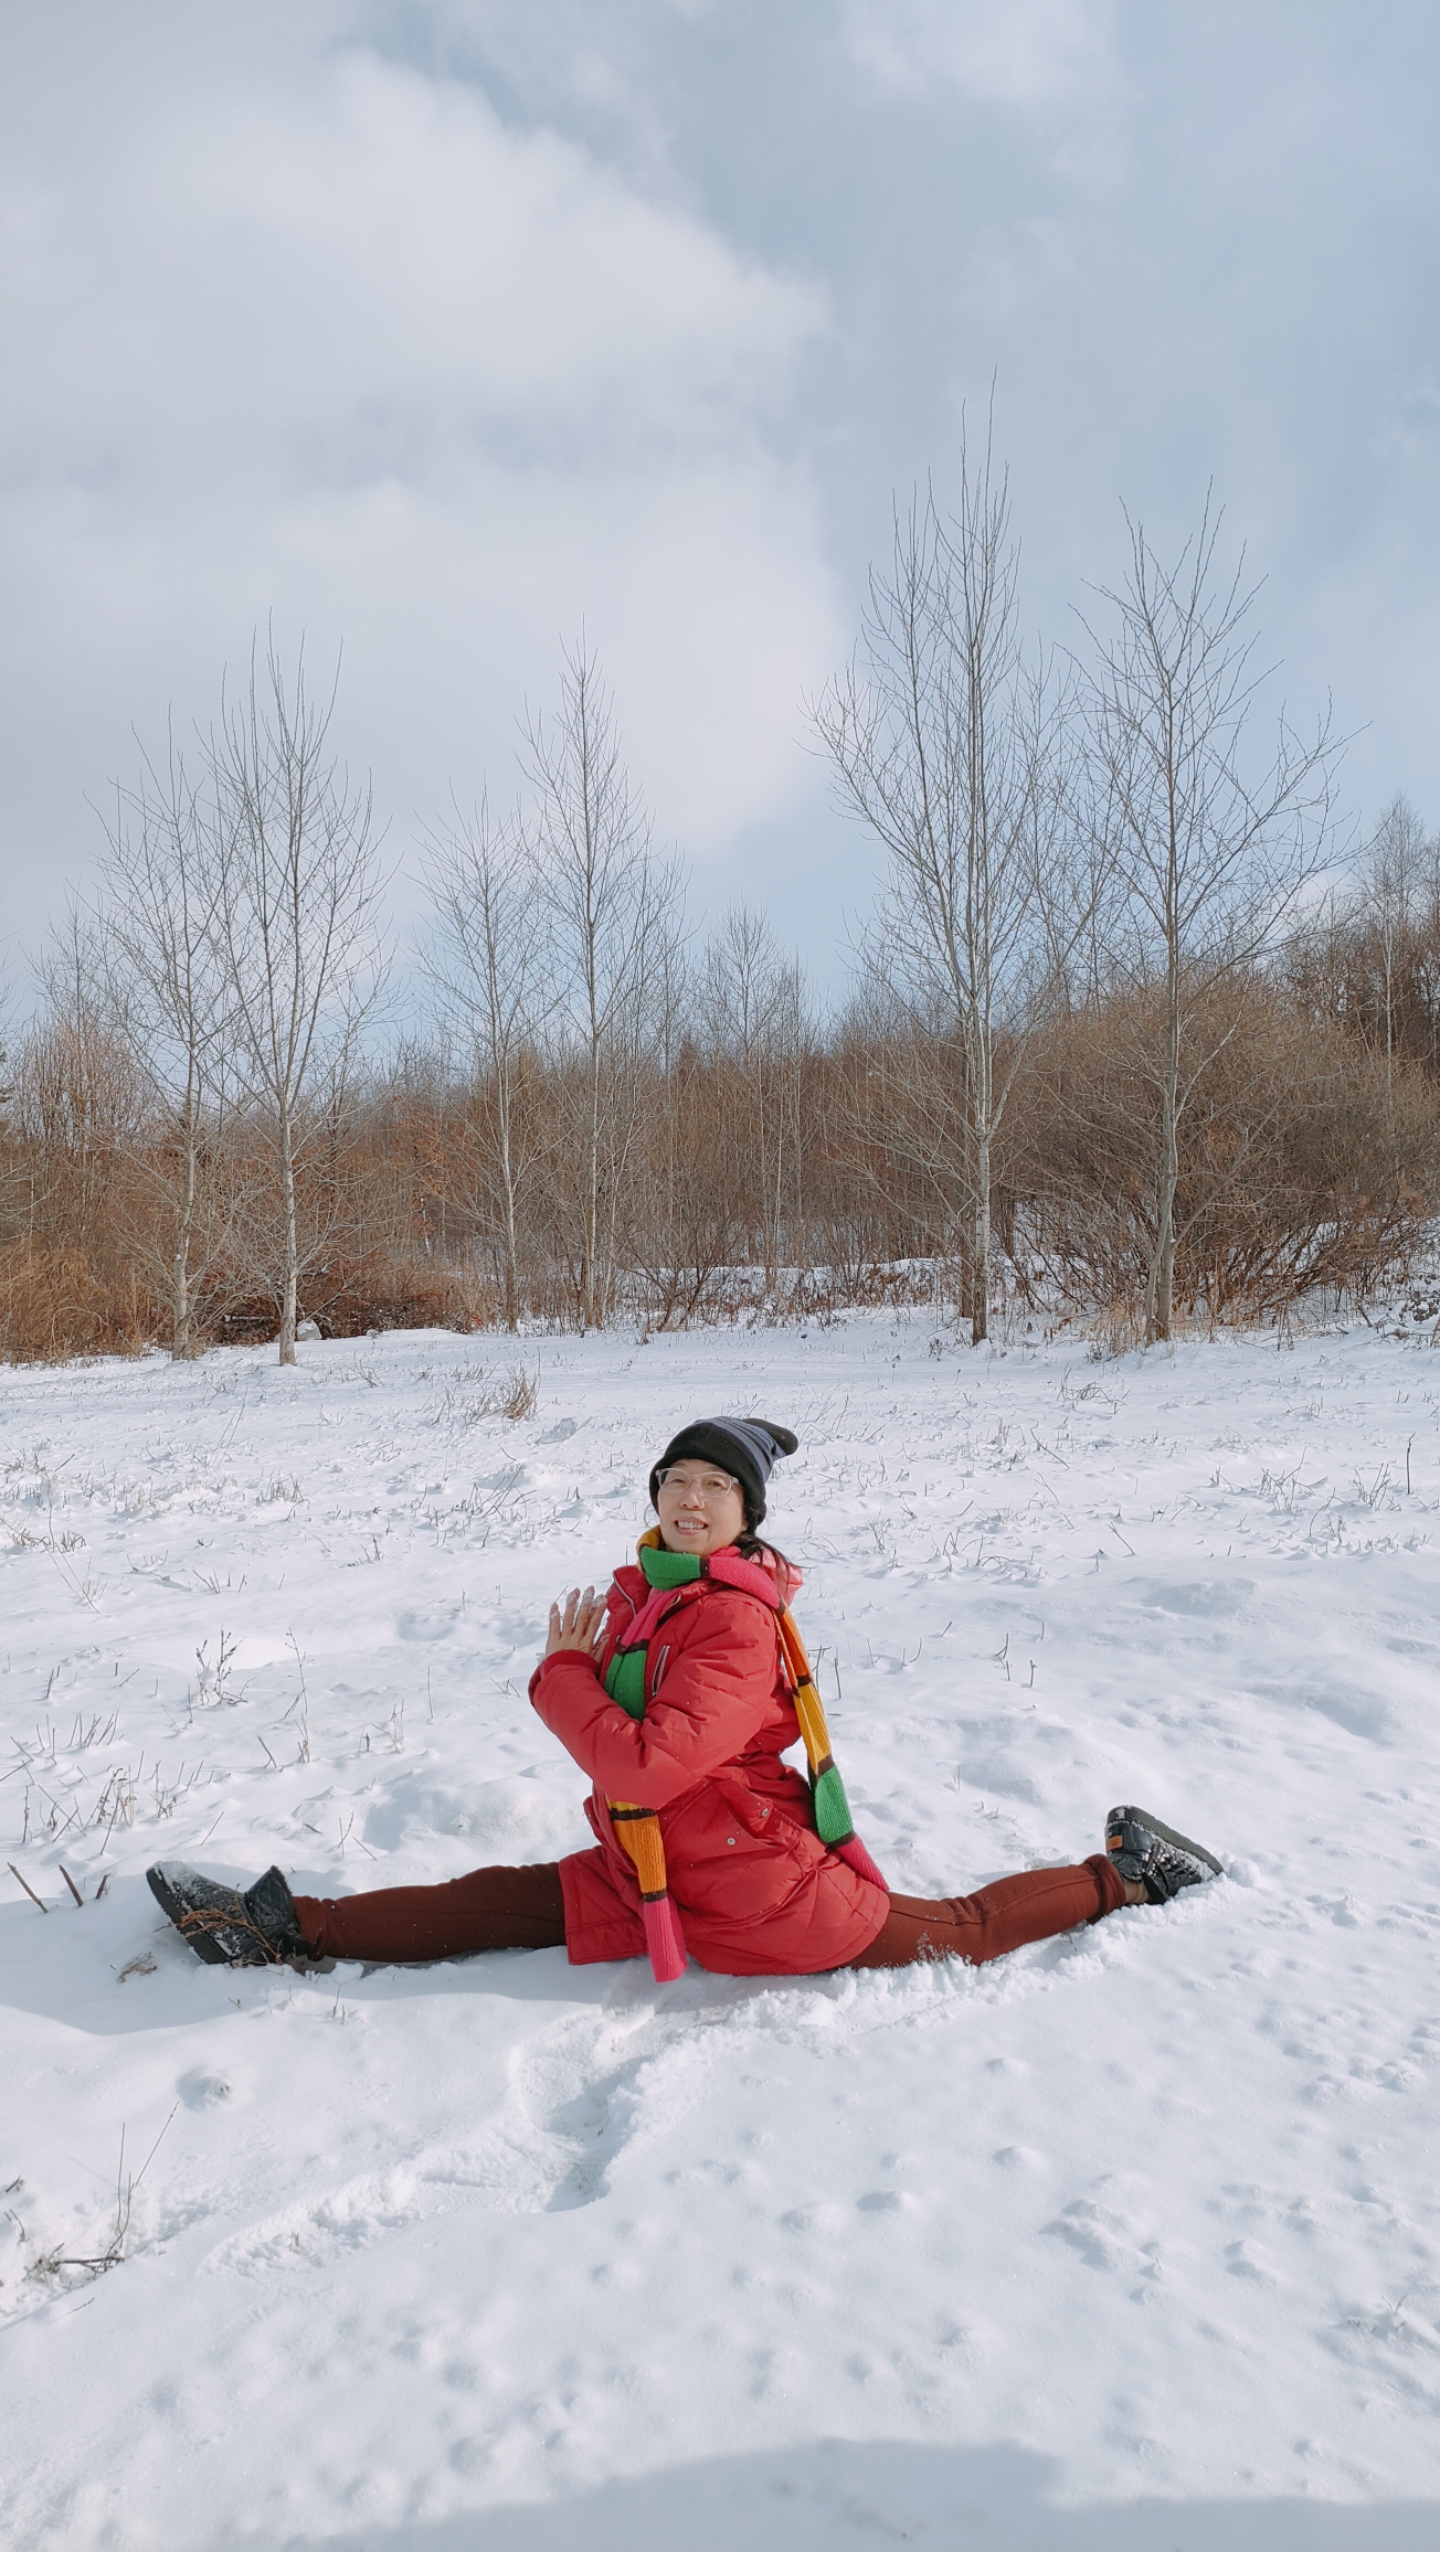 冬日暖阳下的独特体验  在一片纯白中,一位红衣女子坐在雪地,享受着